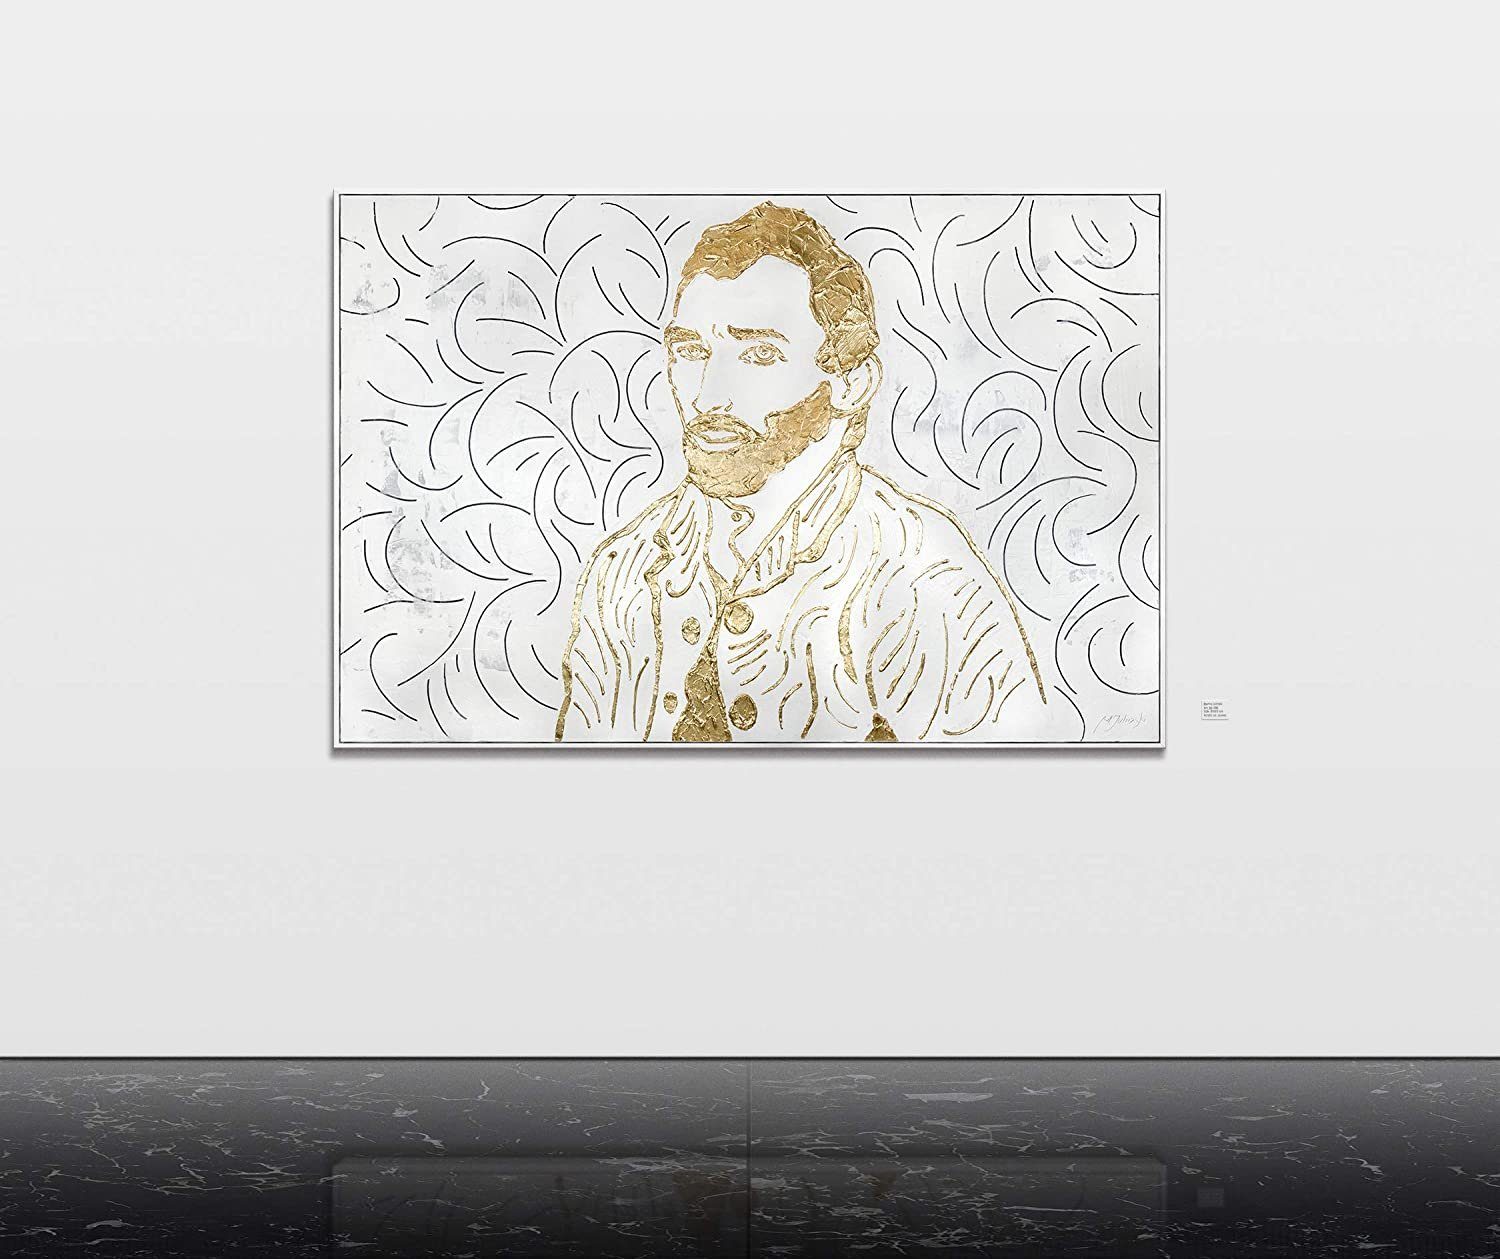 Bild Vincent Rahmen van Leinwand Van Gold Gemälde mit Gogh, Gogh Menschen, Handgemalt YS-Art